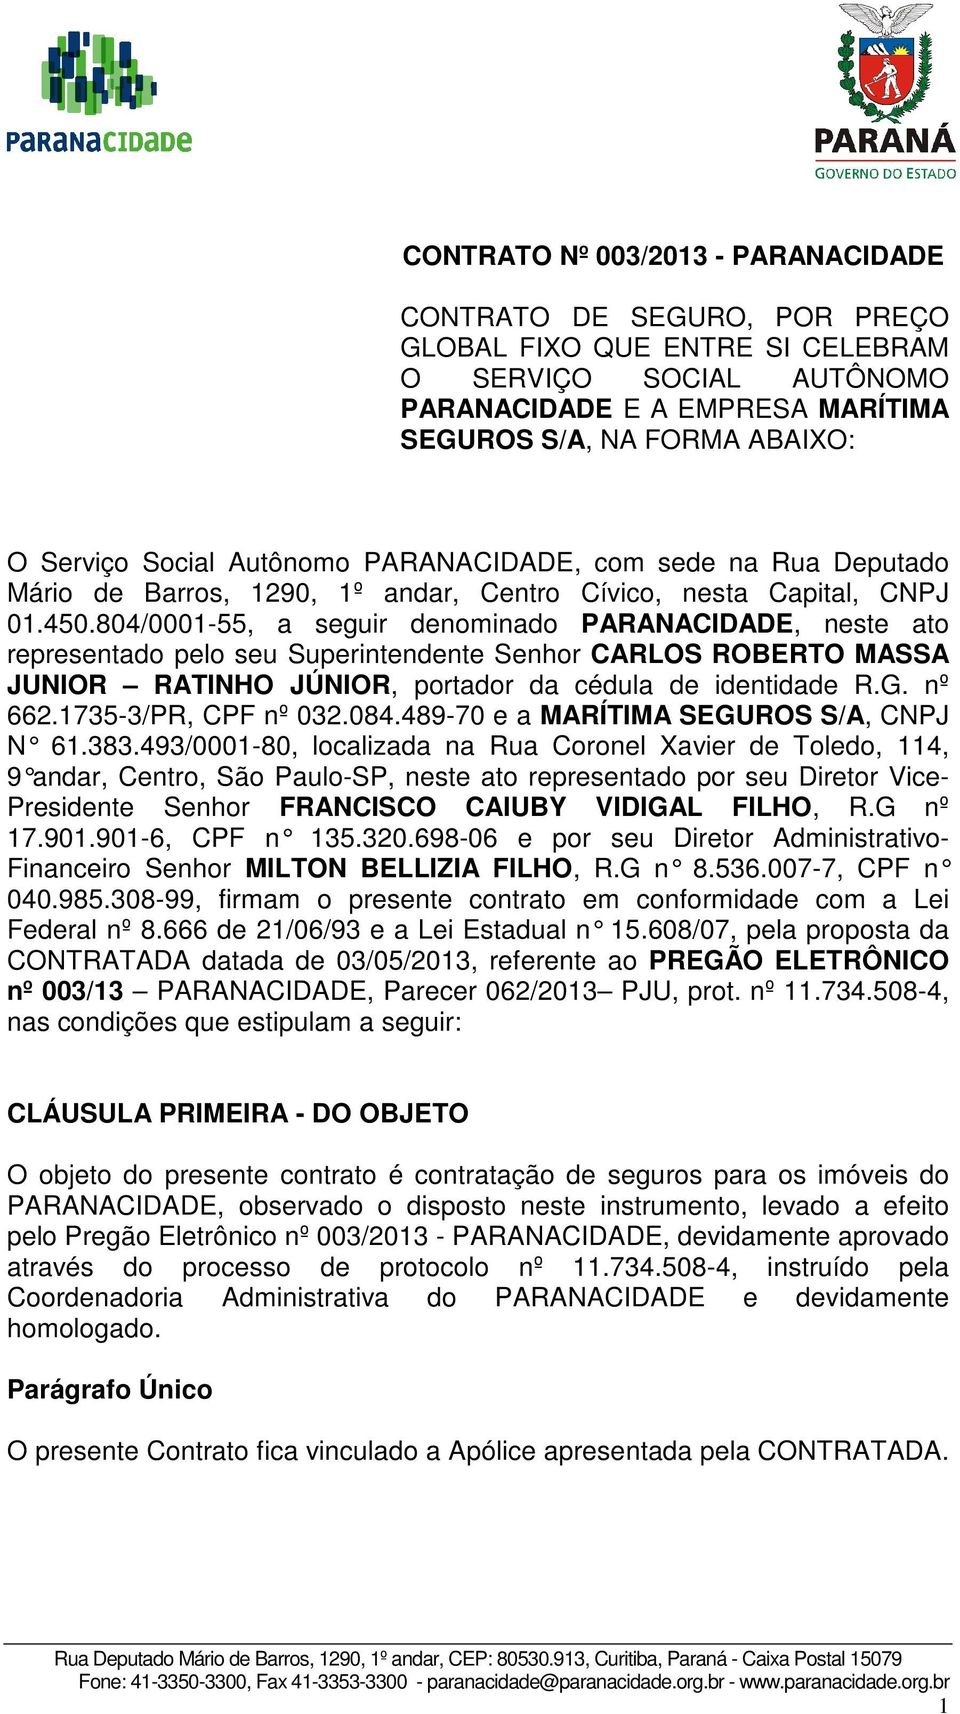 804/0001-55, a seguir denominado PARANACIDADE, neste ato representado pelo seu Superintendente Senhor CARLOS ROBERTO MASSA JUNIOR RATINHO JÚNIOR, portador da cédula de identidade R.G. nº 662.